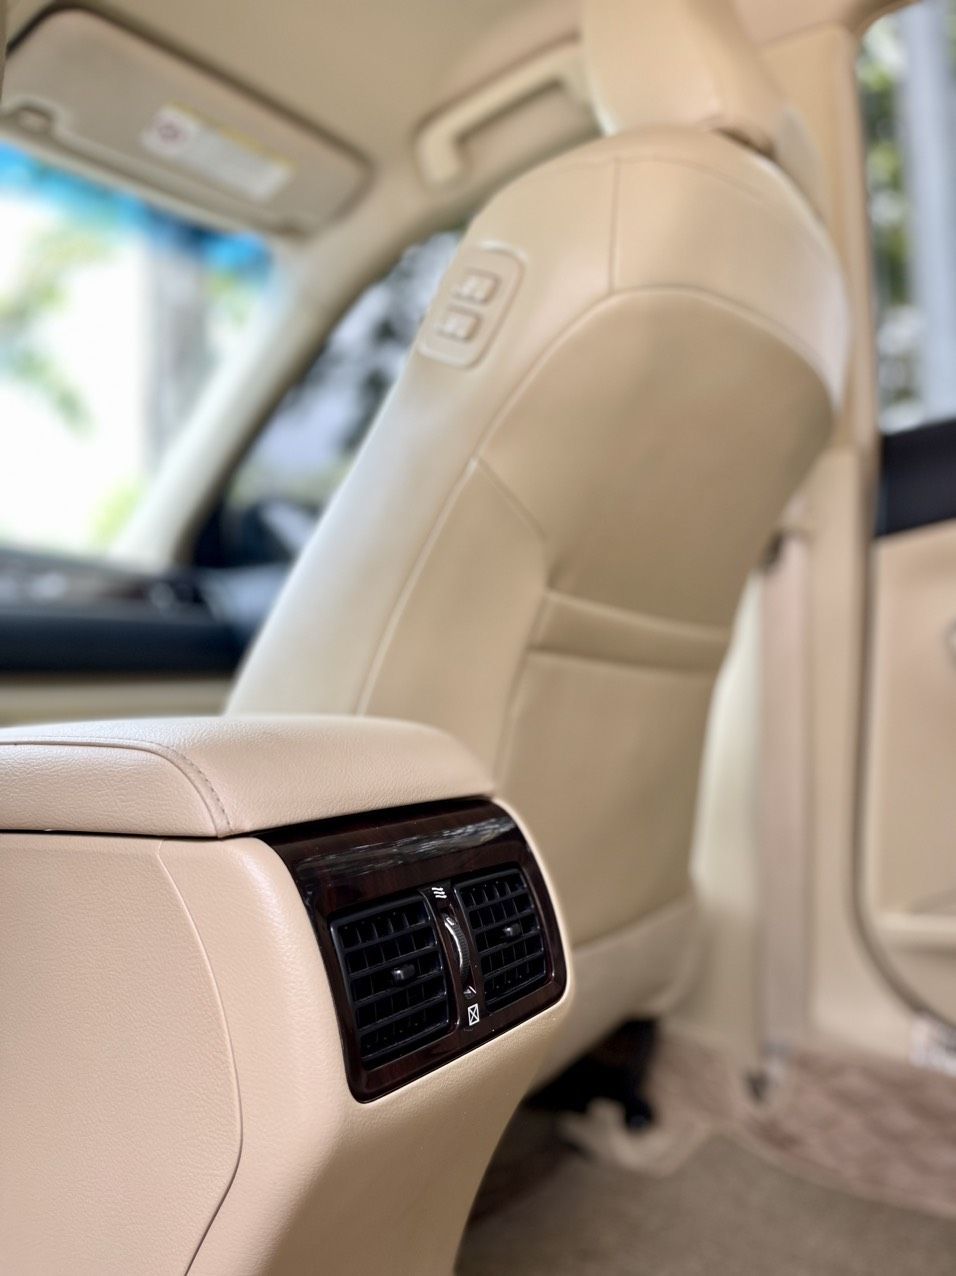 Toyota Camry 2019 - Xe đẹp xuất sắc, hỗ trợ trả góp 70% giá trị xe